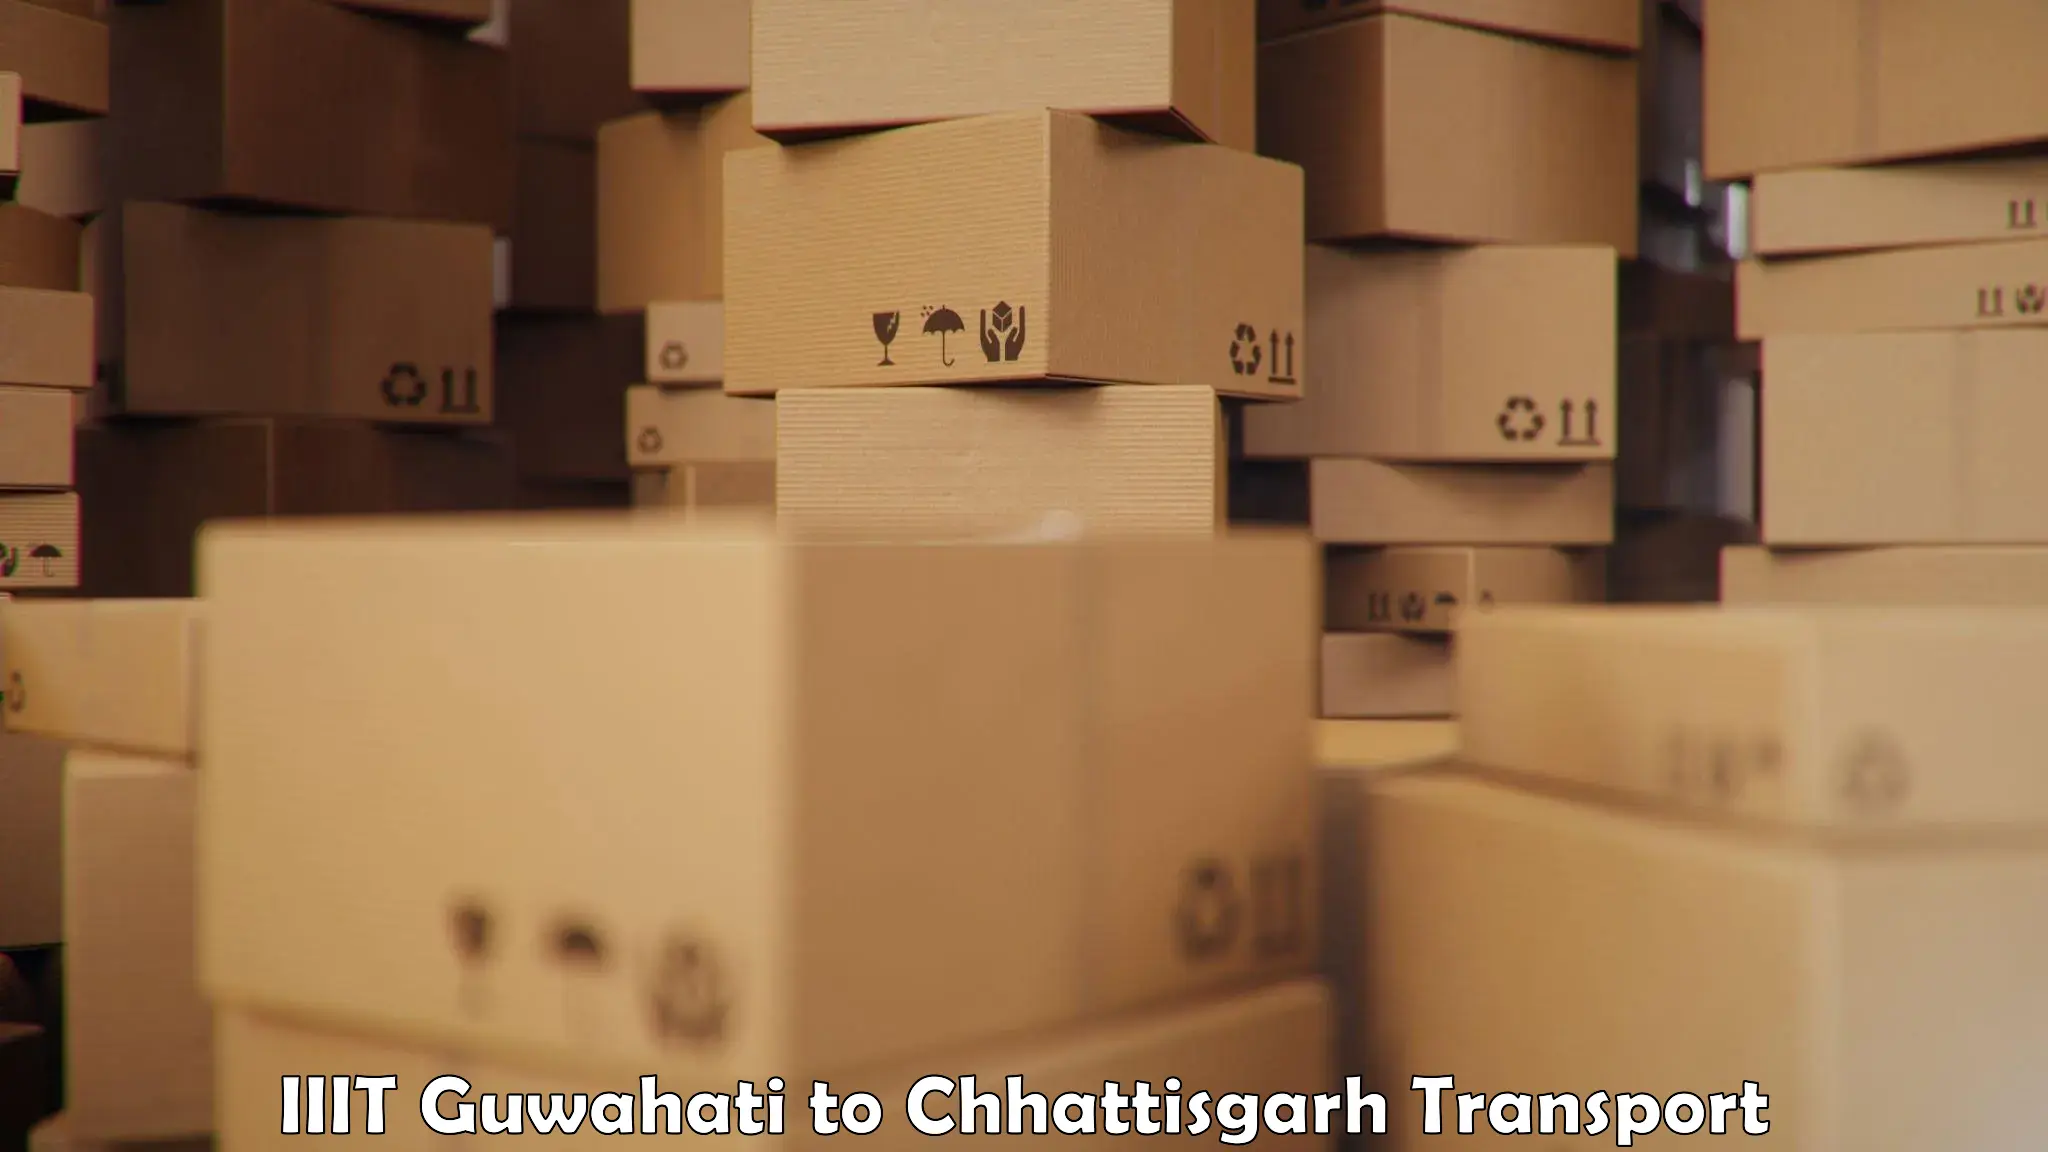 Land transport services IIIT Guwahati to Bijapur Chhattisgarh